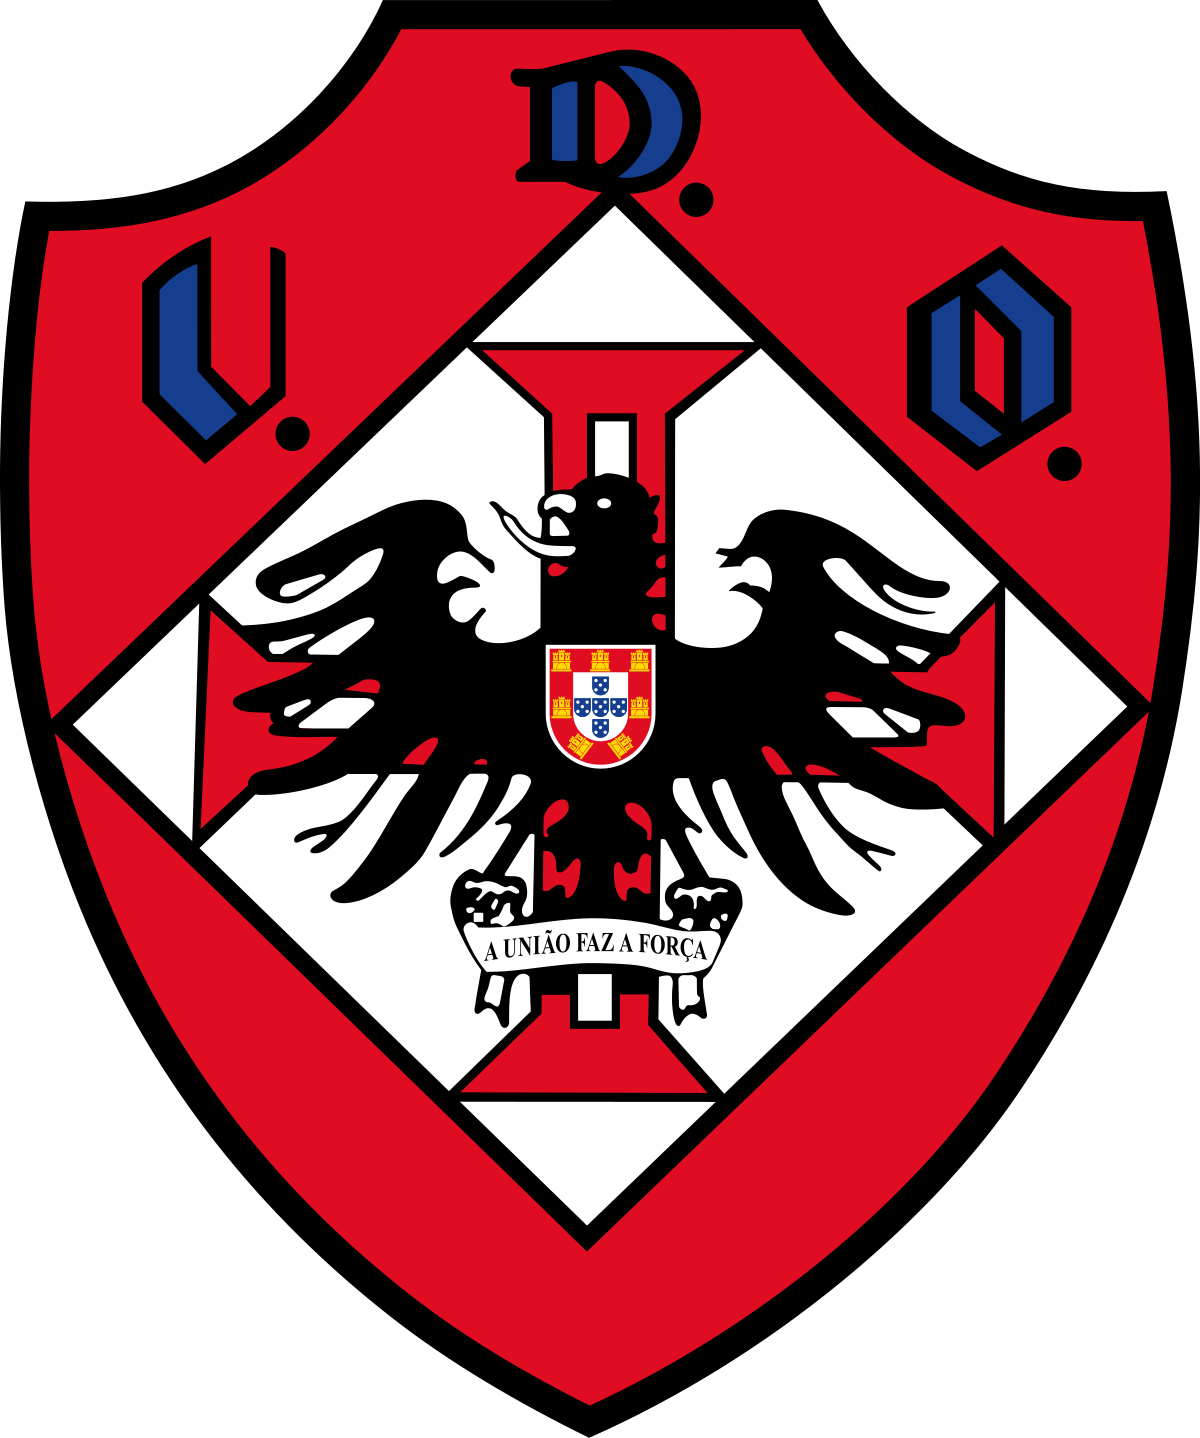 Wappen UD Oliveirense diverse